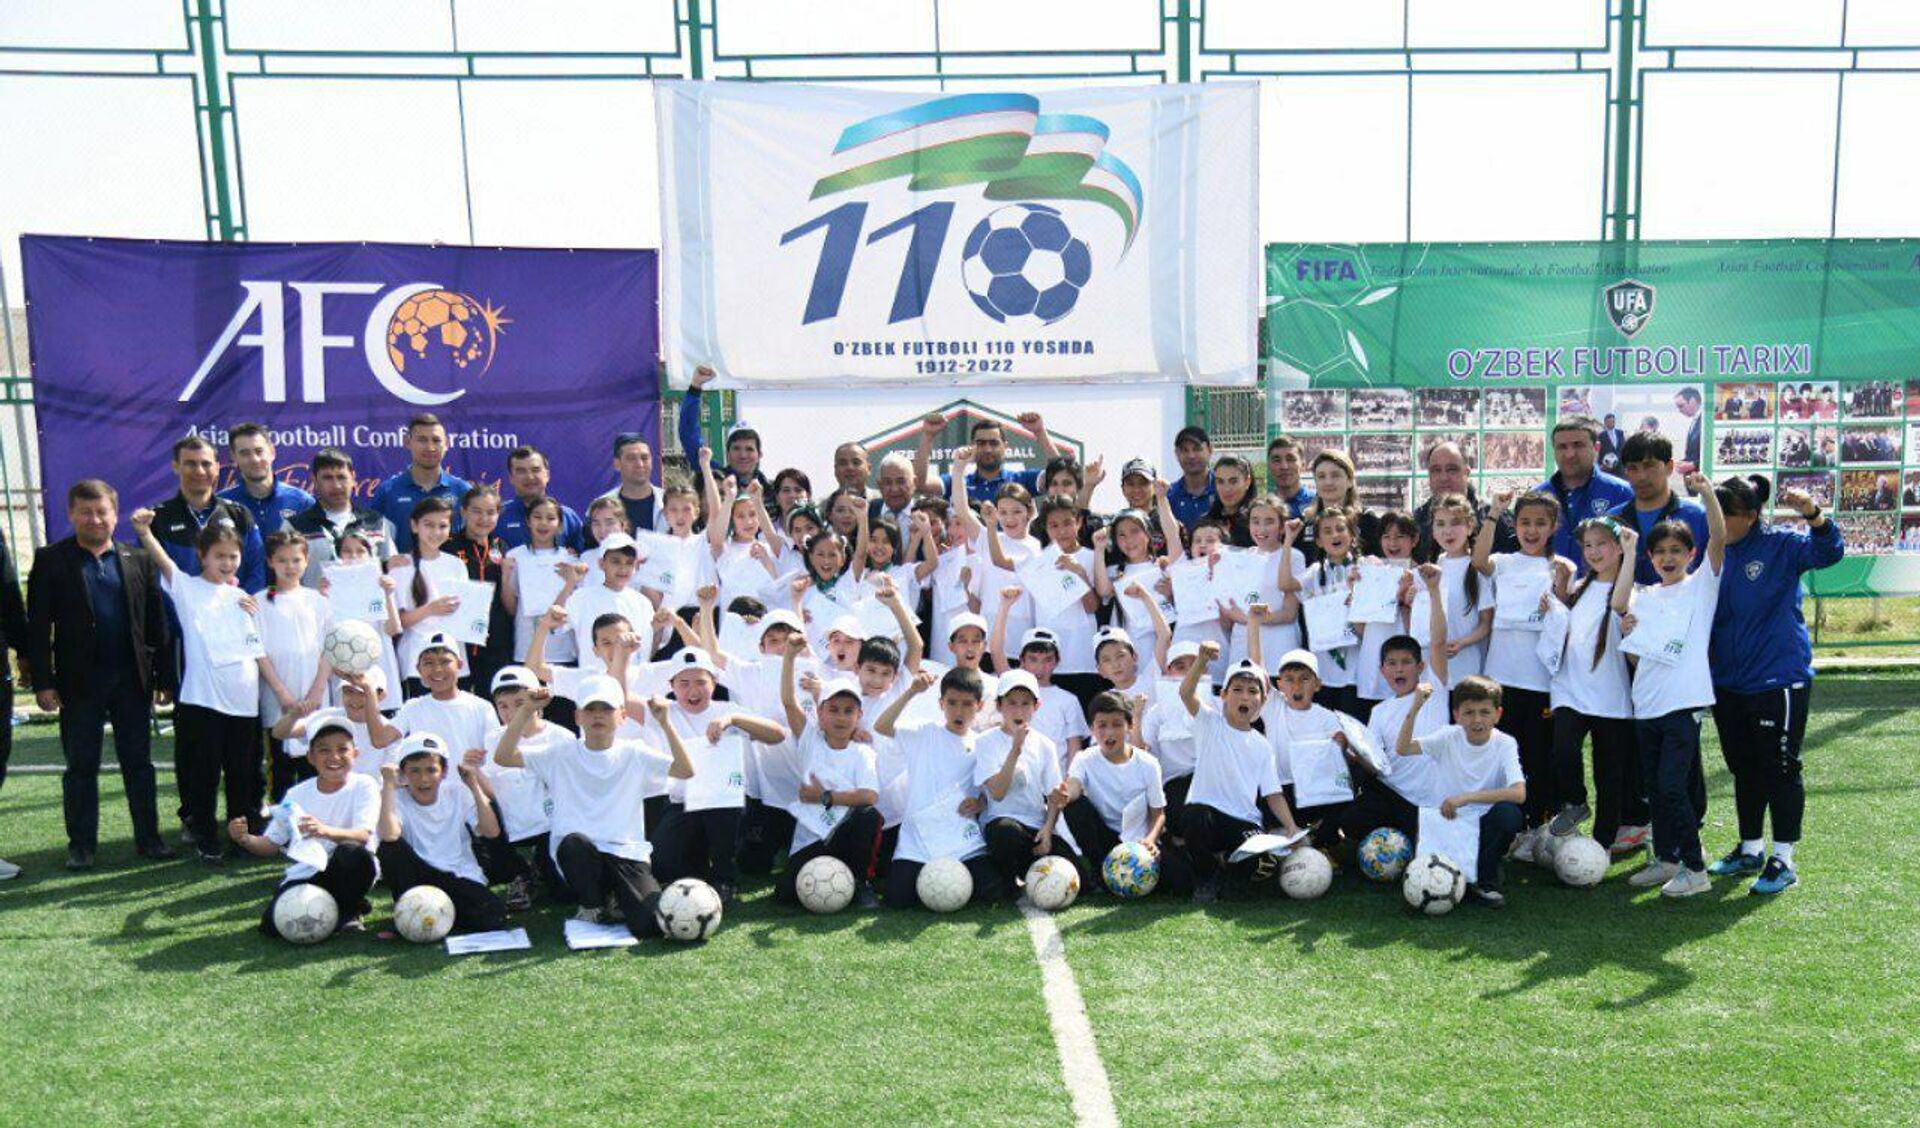 Festival posvashenniy 110-letiyu uzbekskogo futbola v Djizzake - Sputnik O‘zbekiston, 1920, 04.04.2022